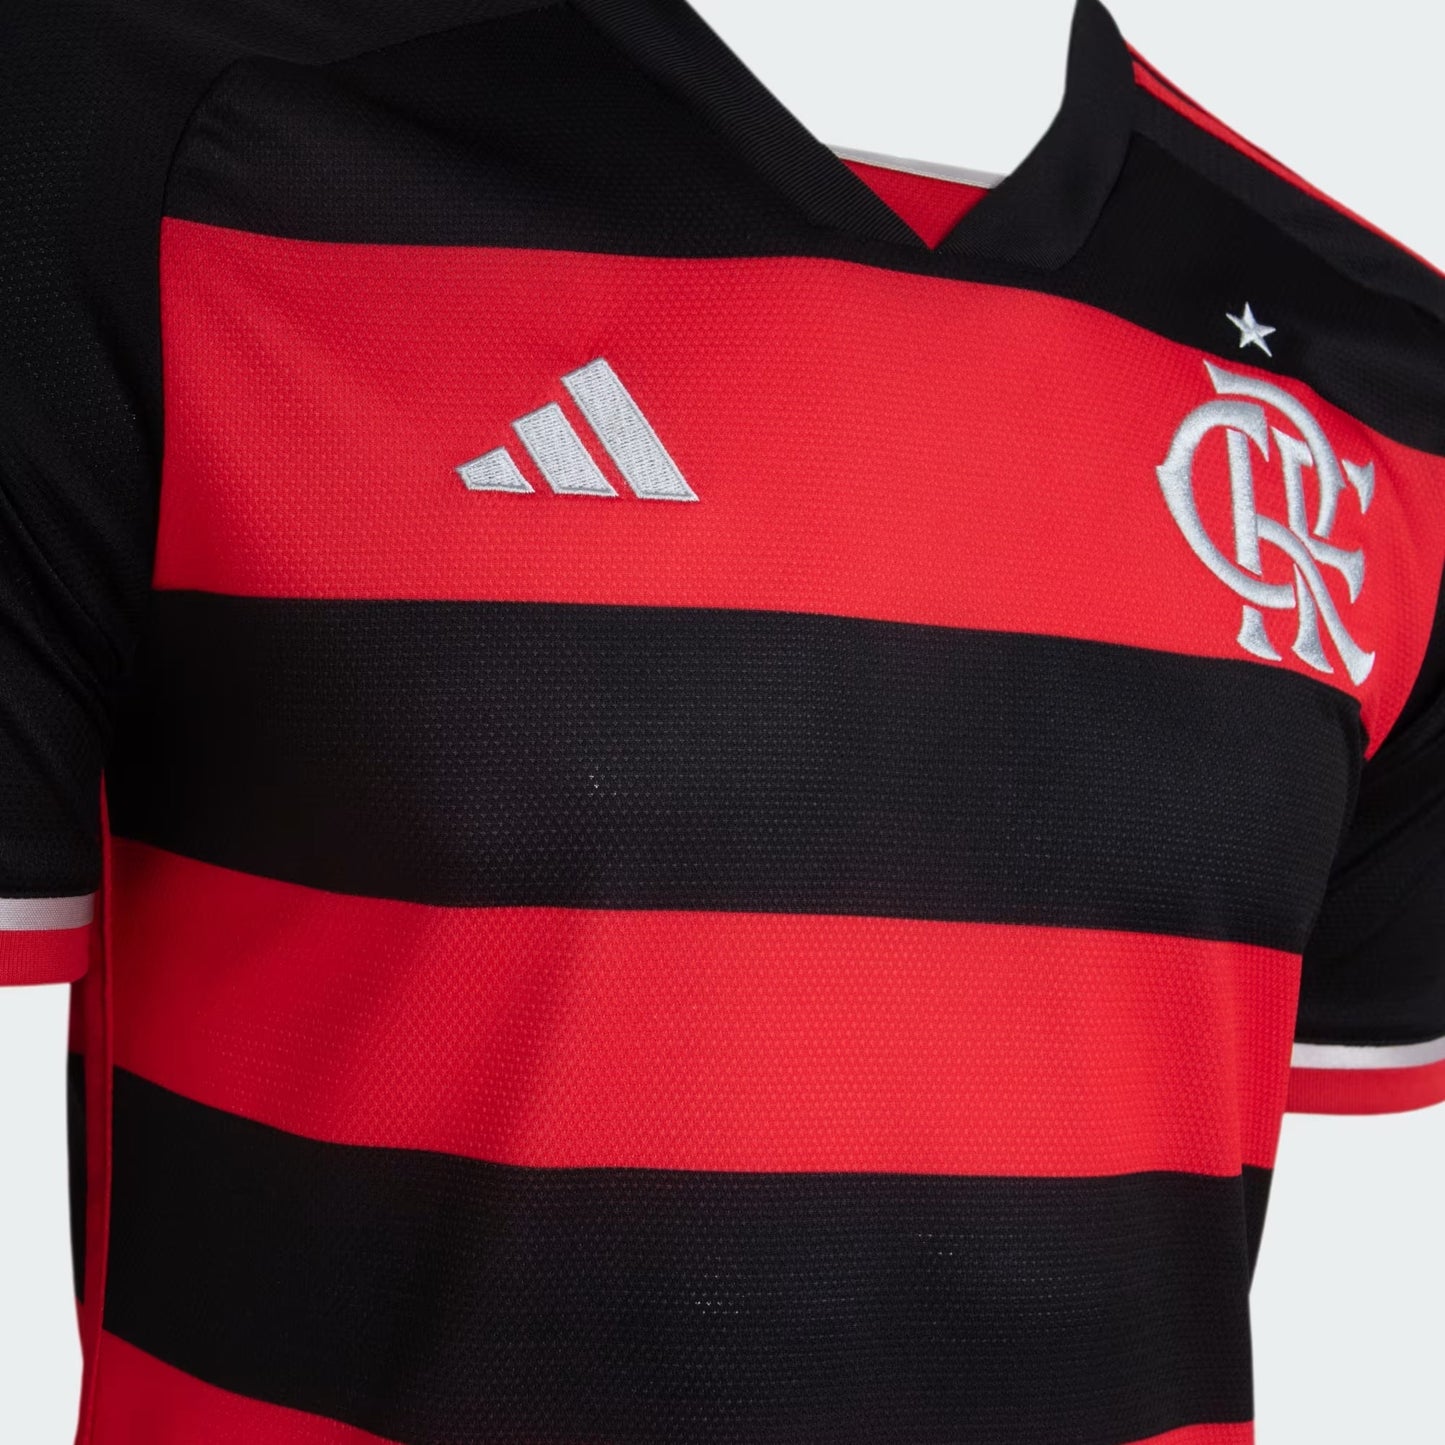 Camisa do Flamengo Home 24/25 s/n Torcedor Masculino - Preto e Vermelho